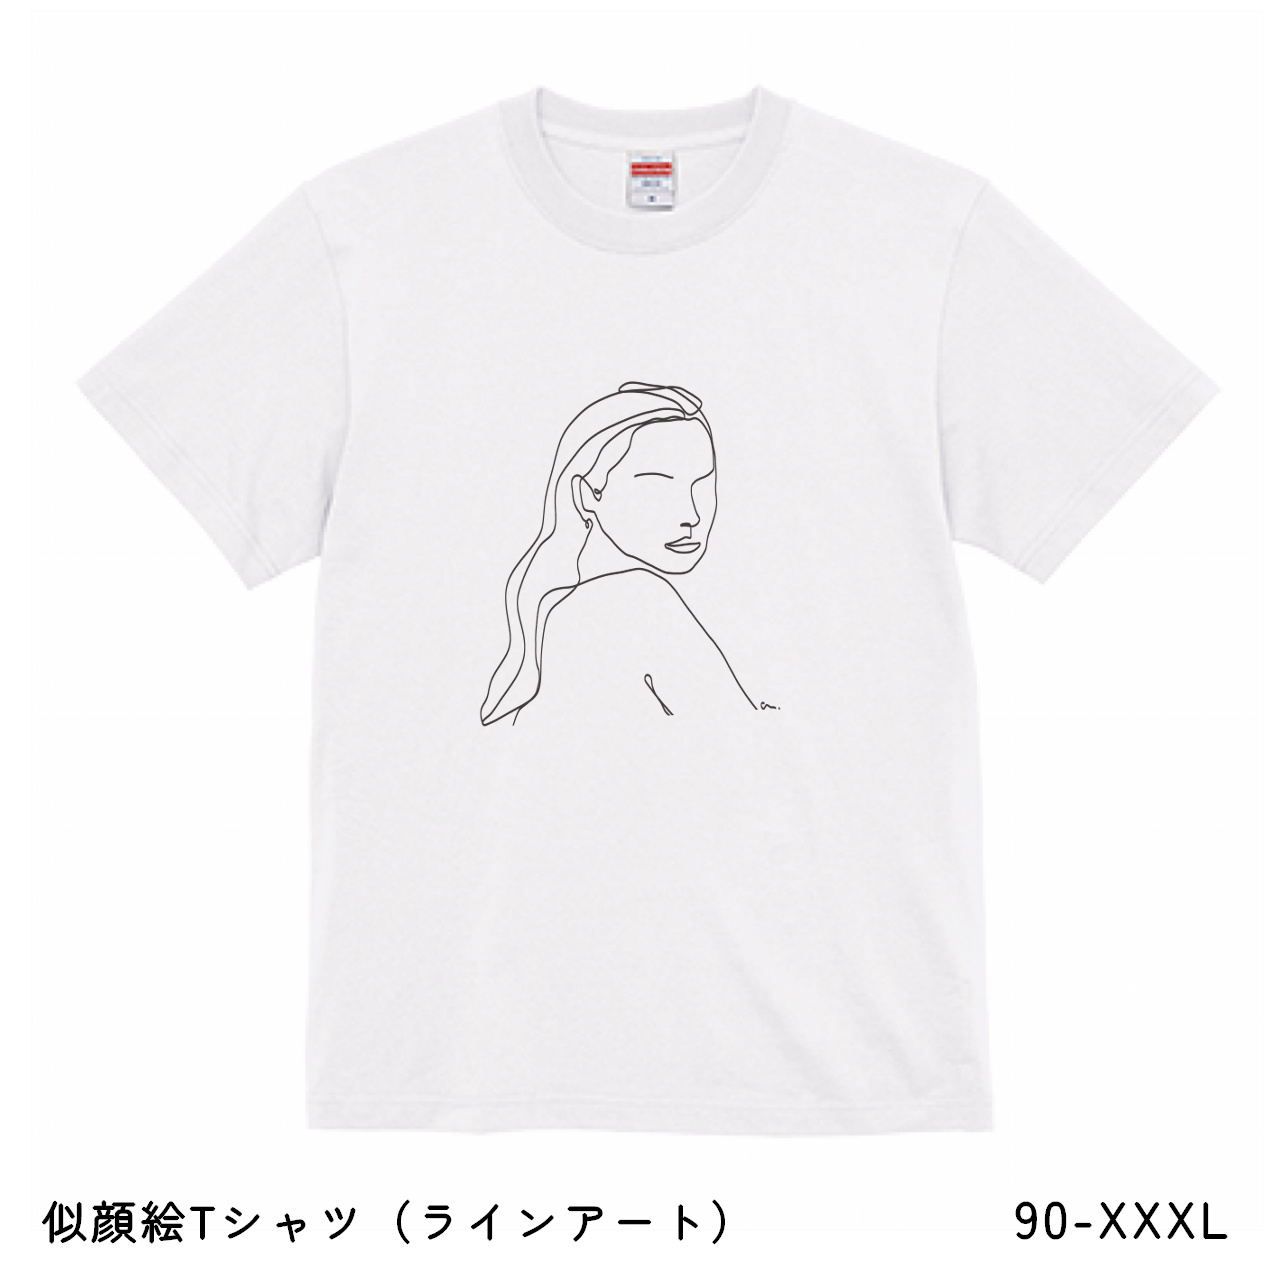 【似顔絵・イラスト】Tシャツ制作 (ラインアート) Tシャツ